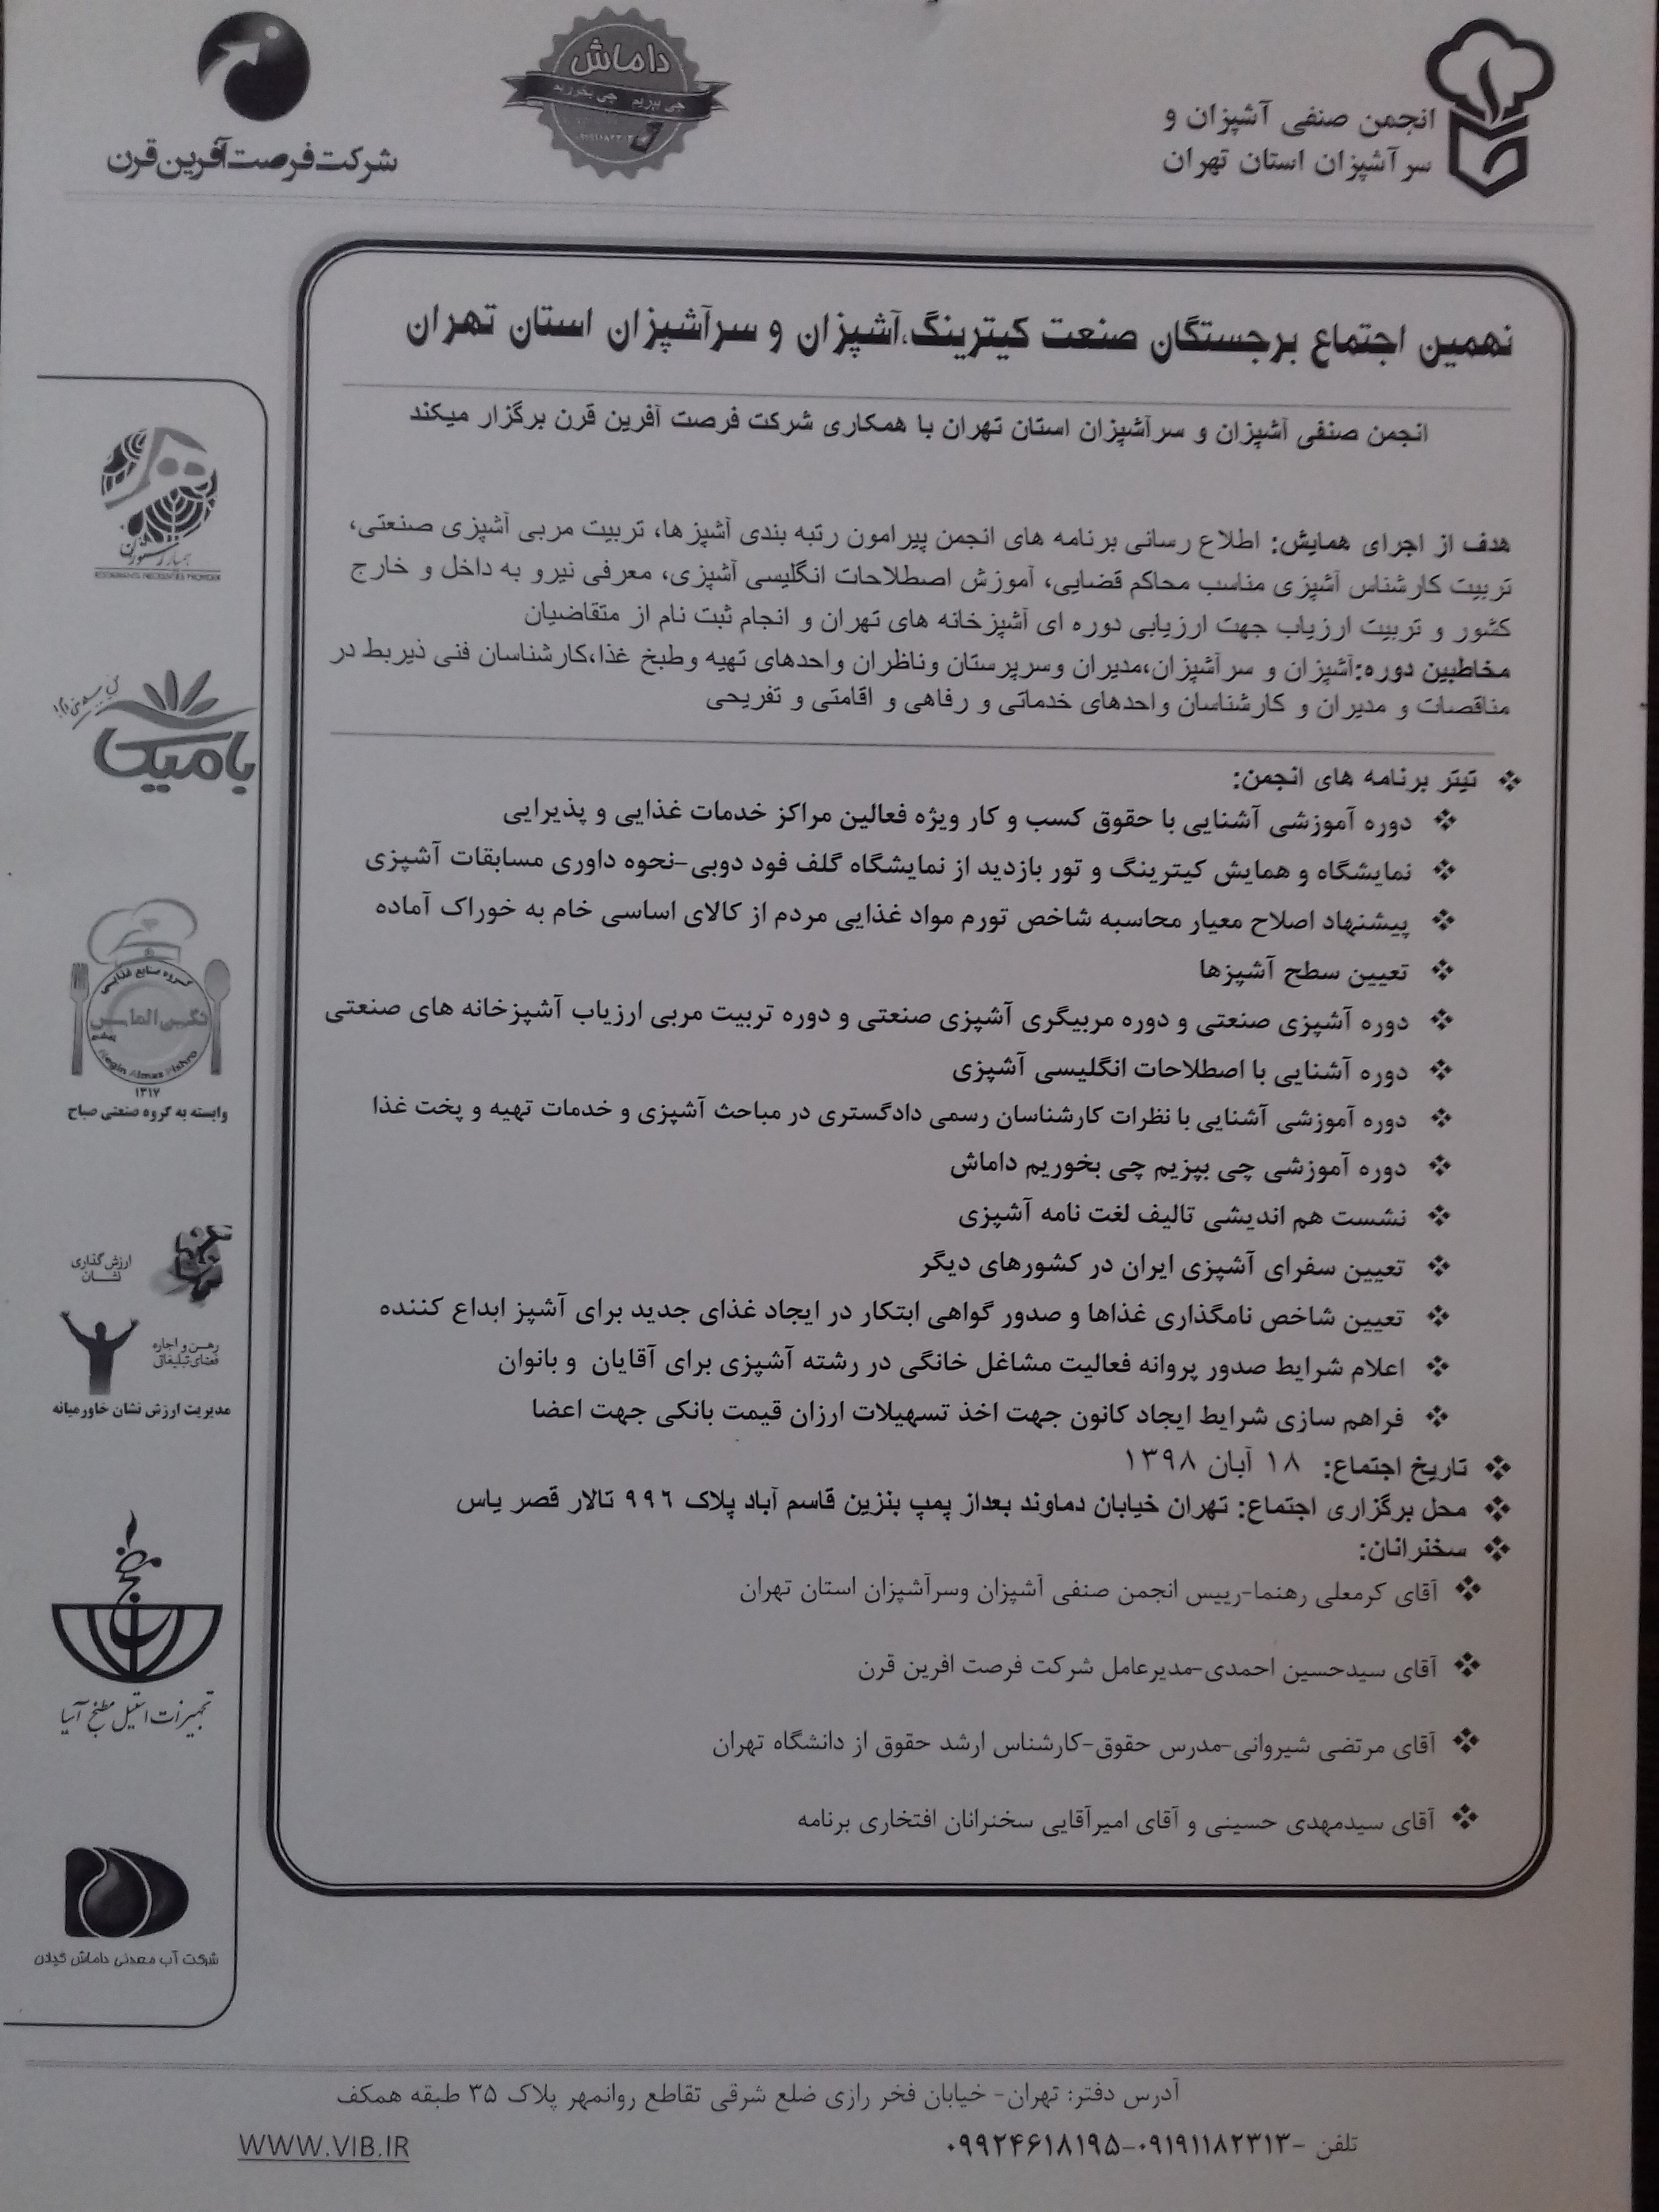 نهمین اجتماع برجستگان صنعت کیترینگ، آشپزان وسرآشپزان استان تهران